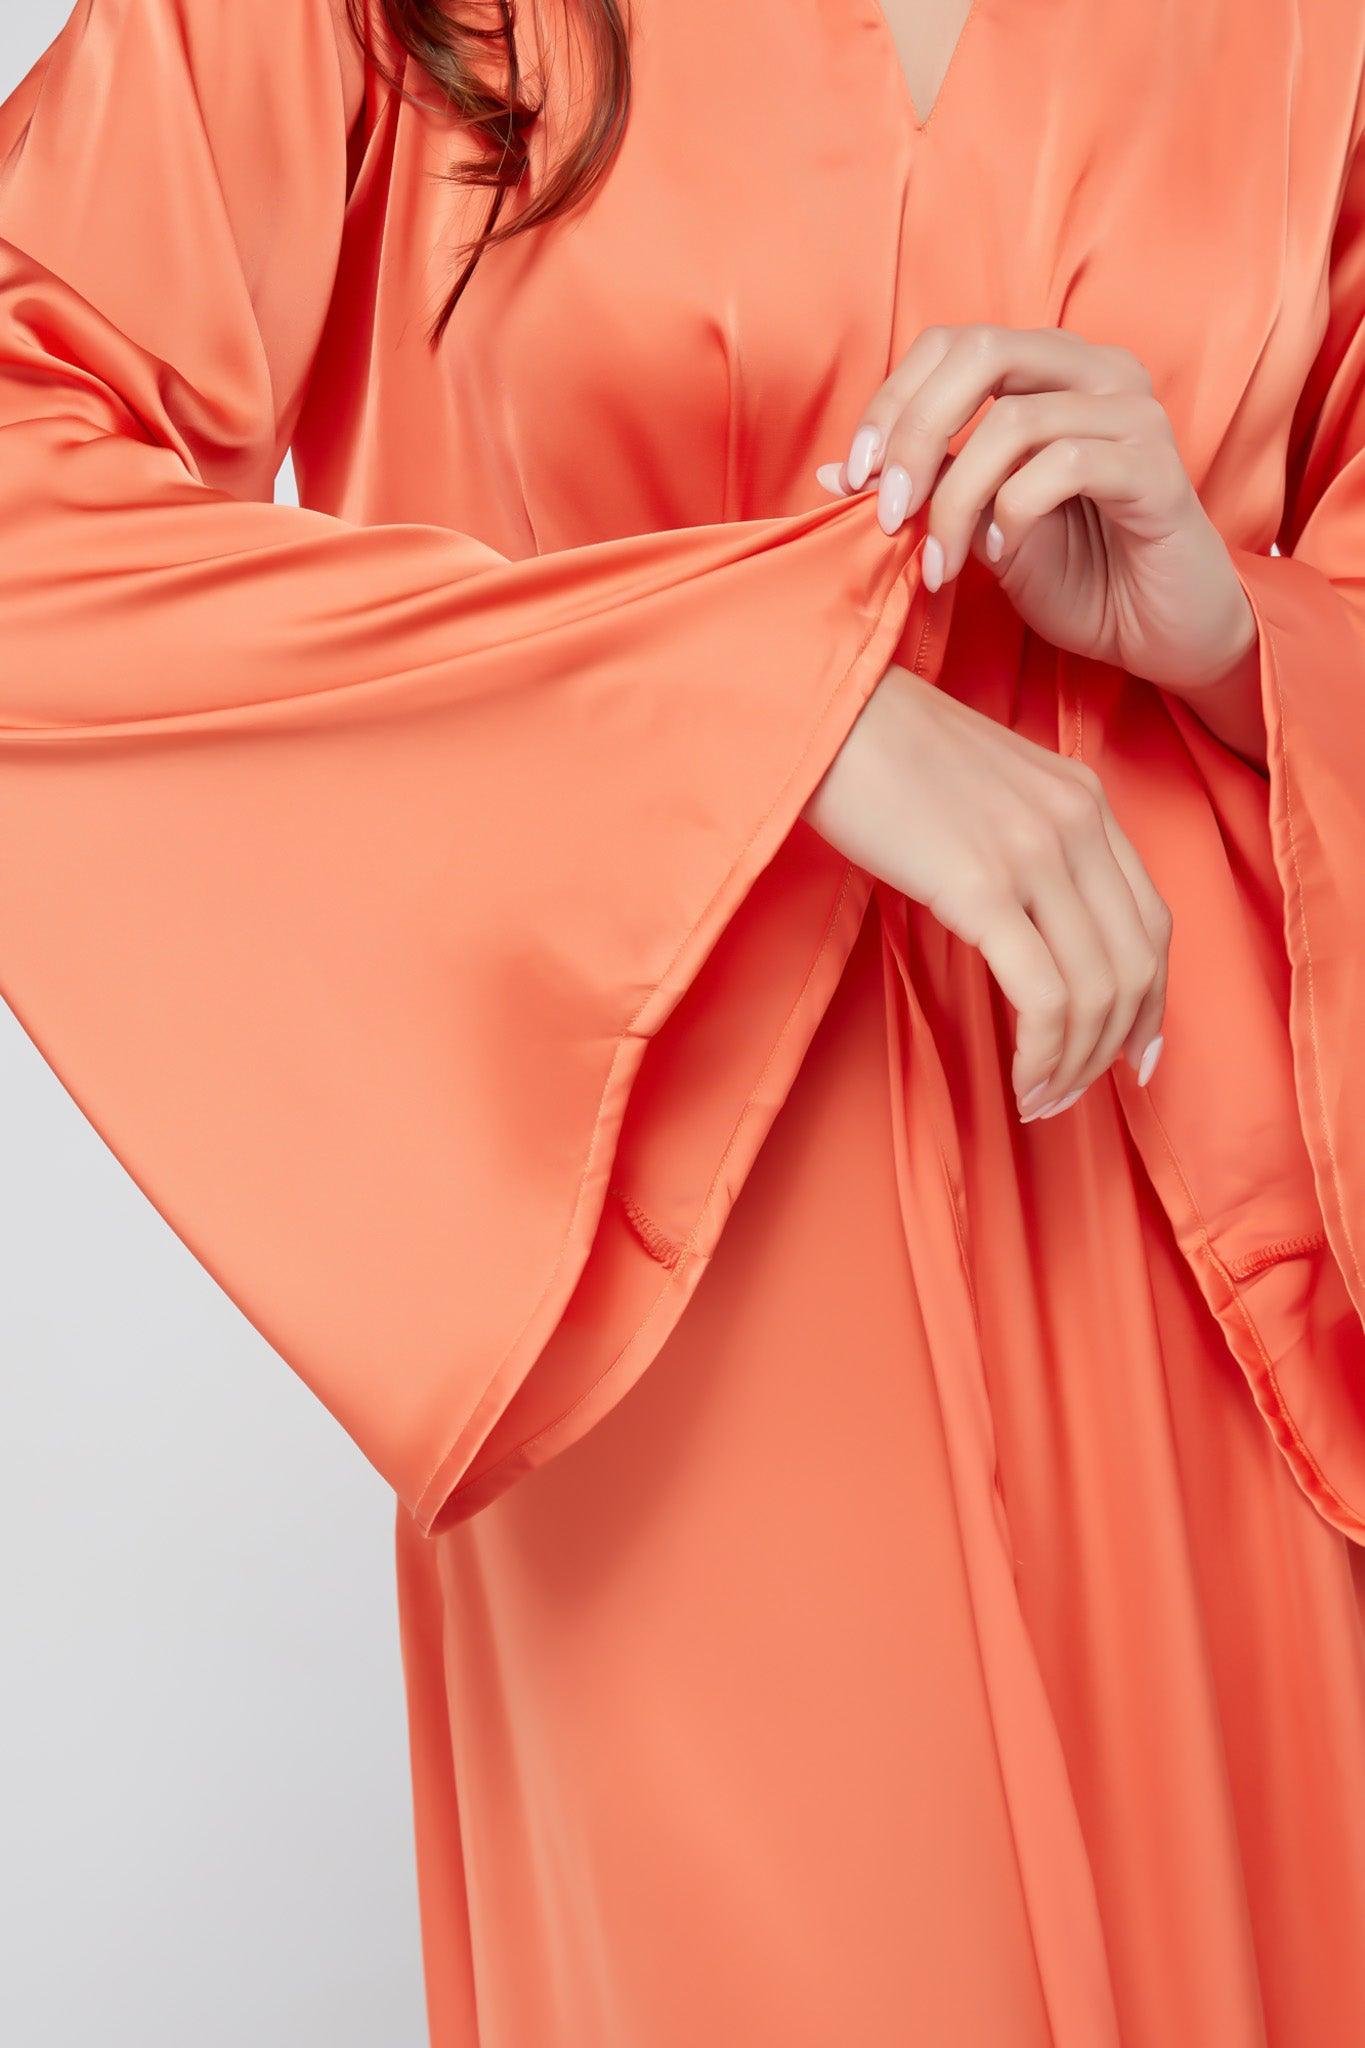 Ophelia Peachy Orange Luxury Soft Satin Maxi Dress With Kimono Sleeves - TAHLIRA